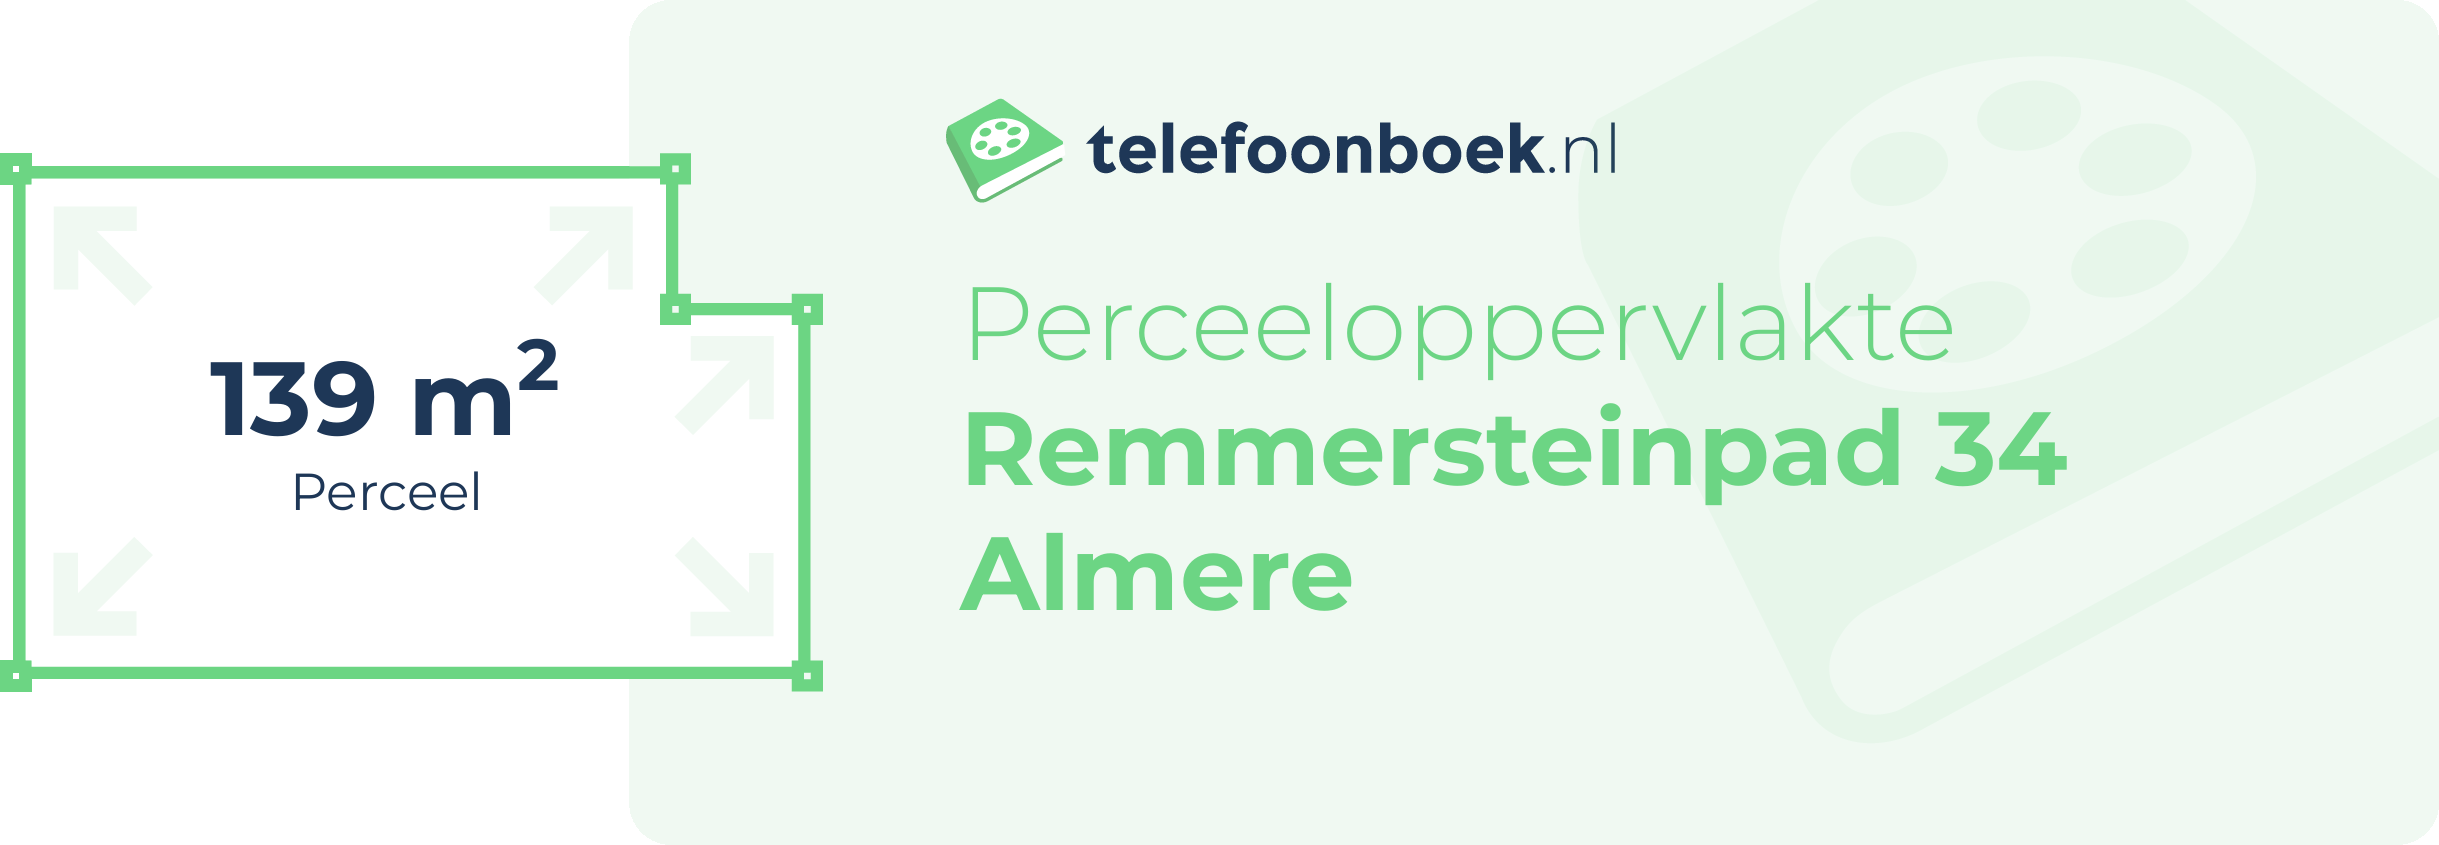 Perceeloppervlakte Remmersteinpad 34 Almere